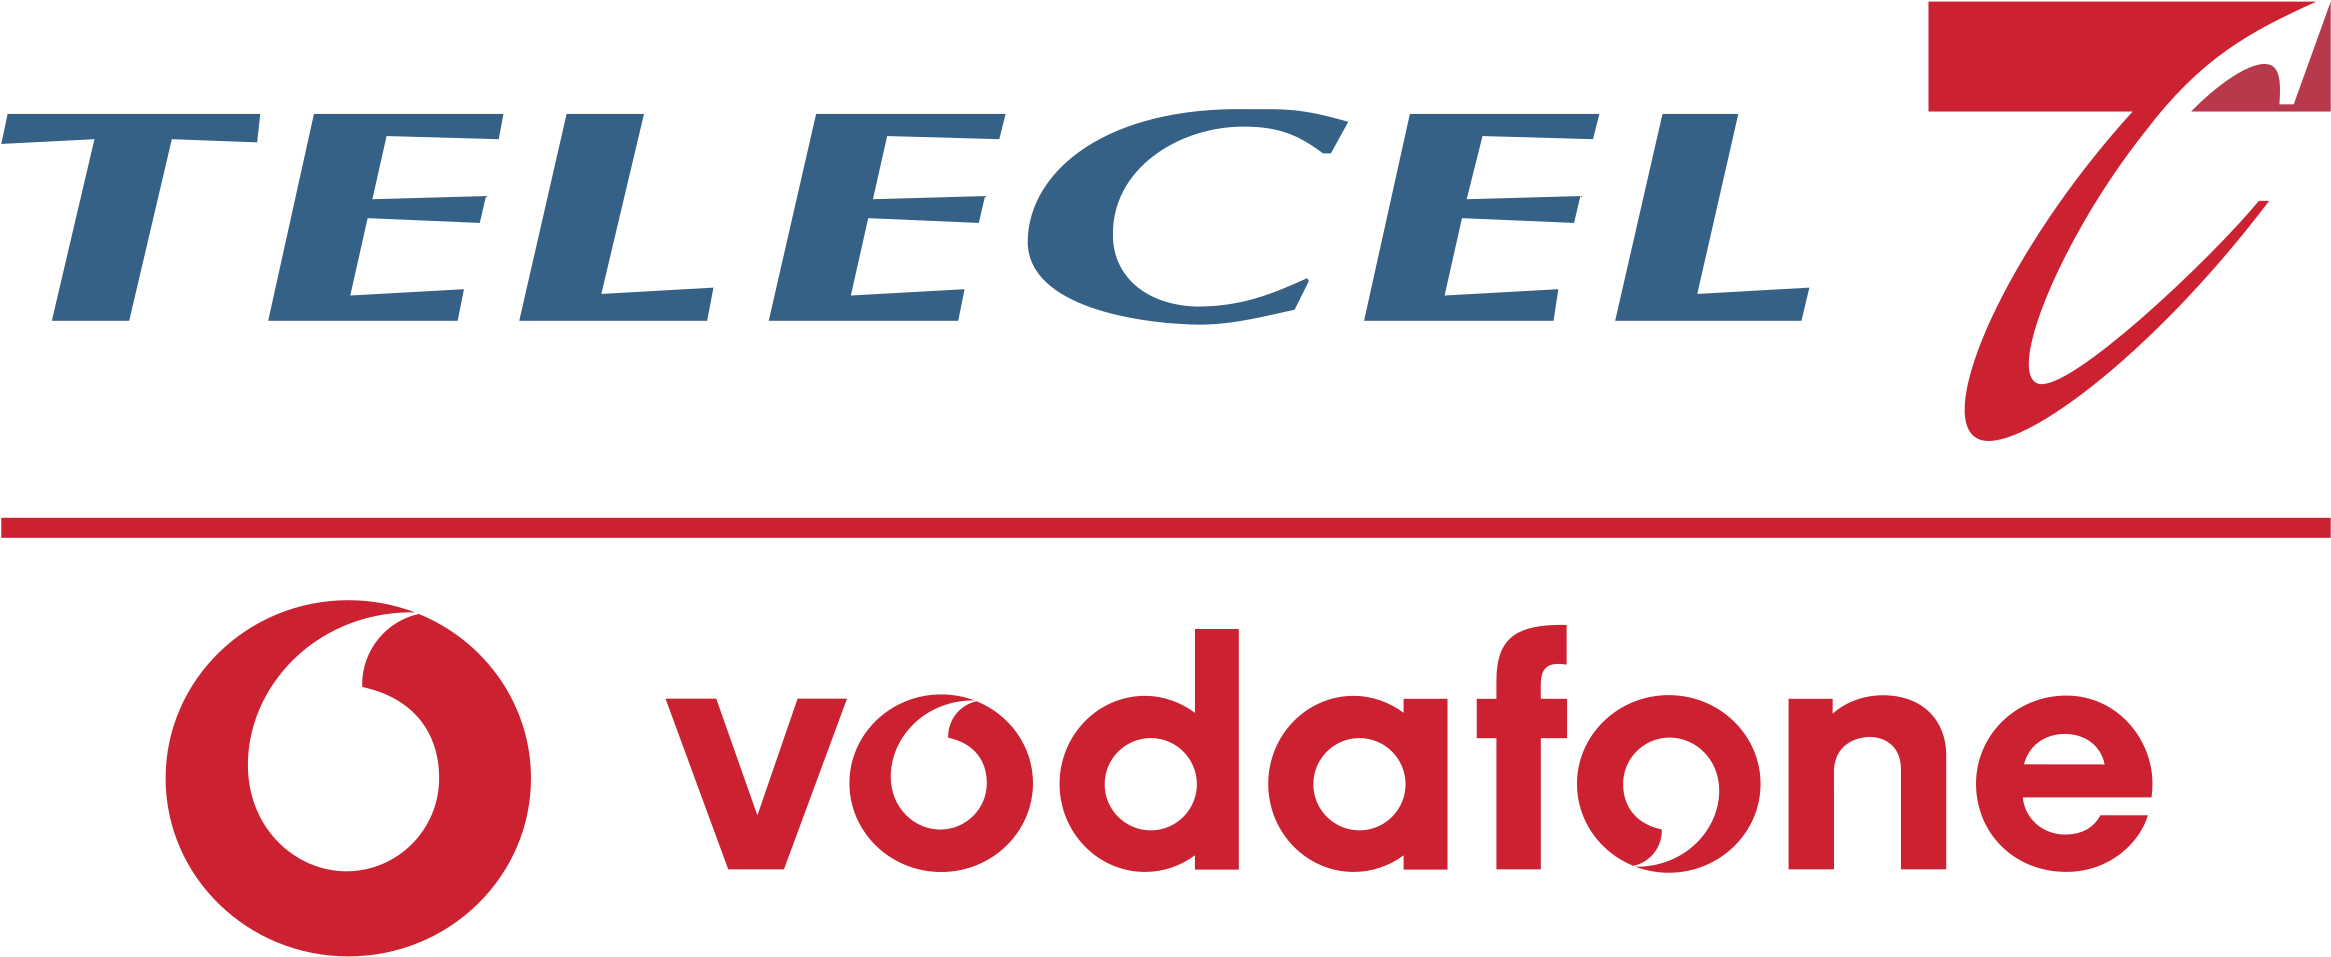 Teleceland Vodafone Logos